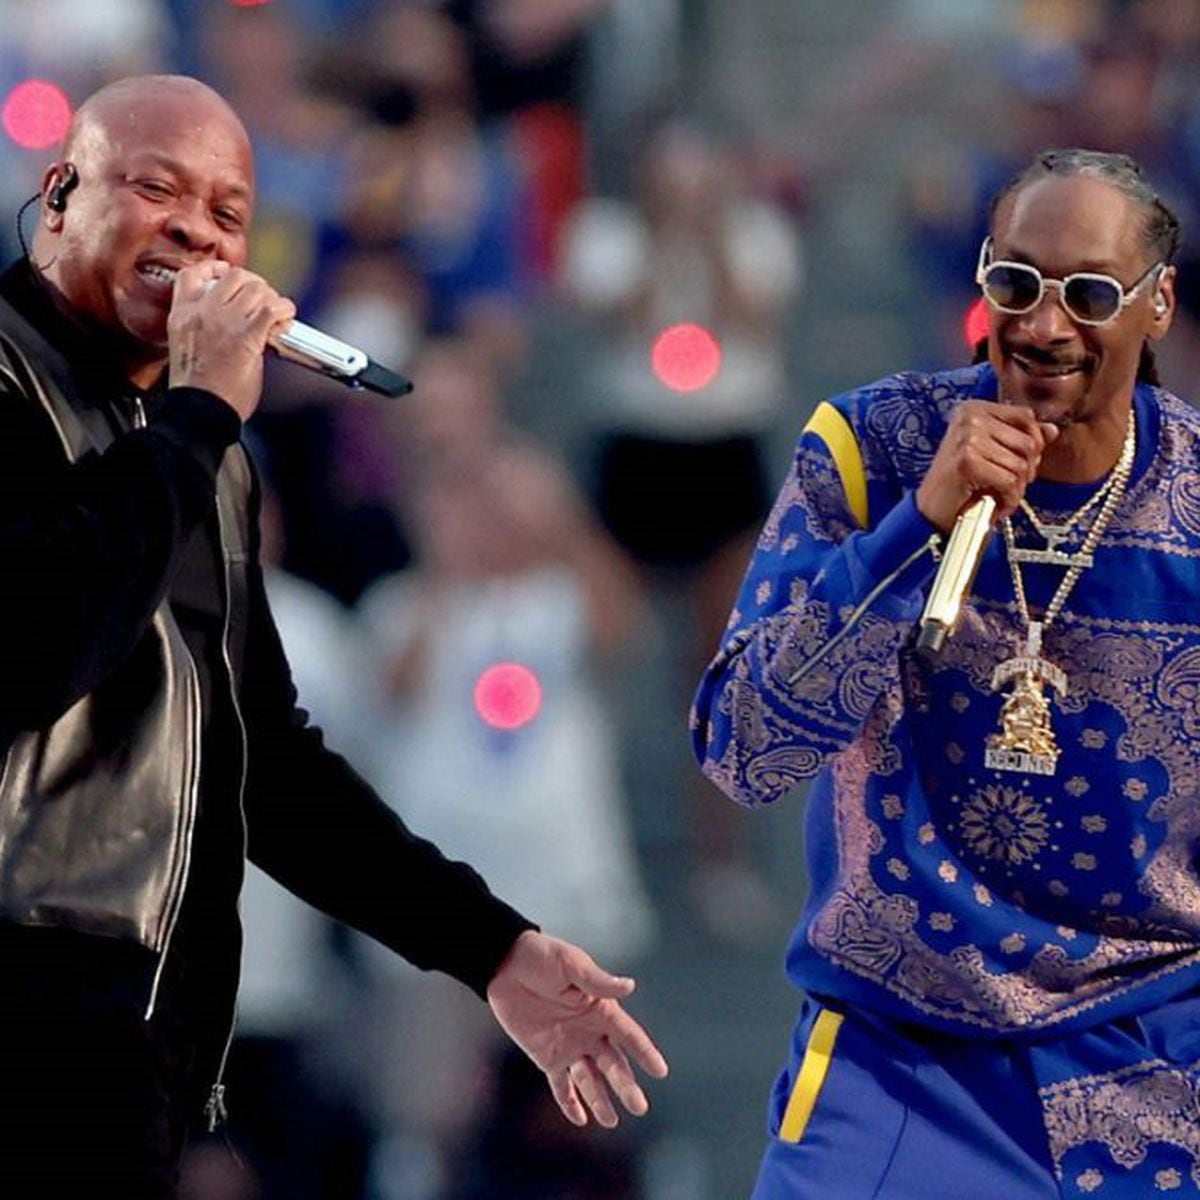 Super Bowl LVI Halftime Show: Eminem kneels, Snoop Dogg, Dr Dre